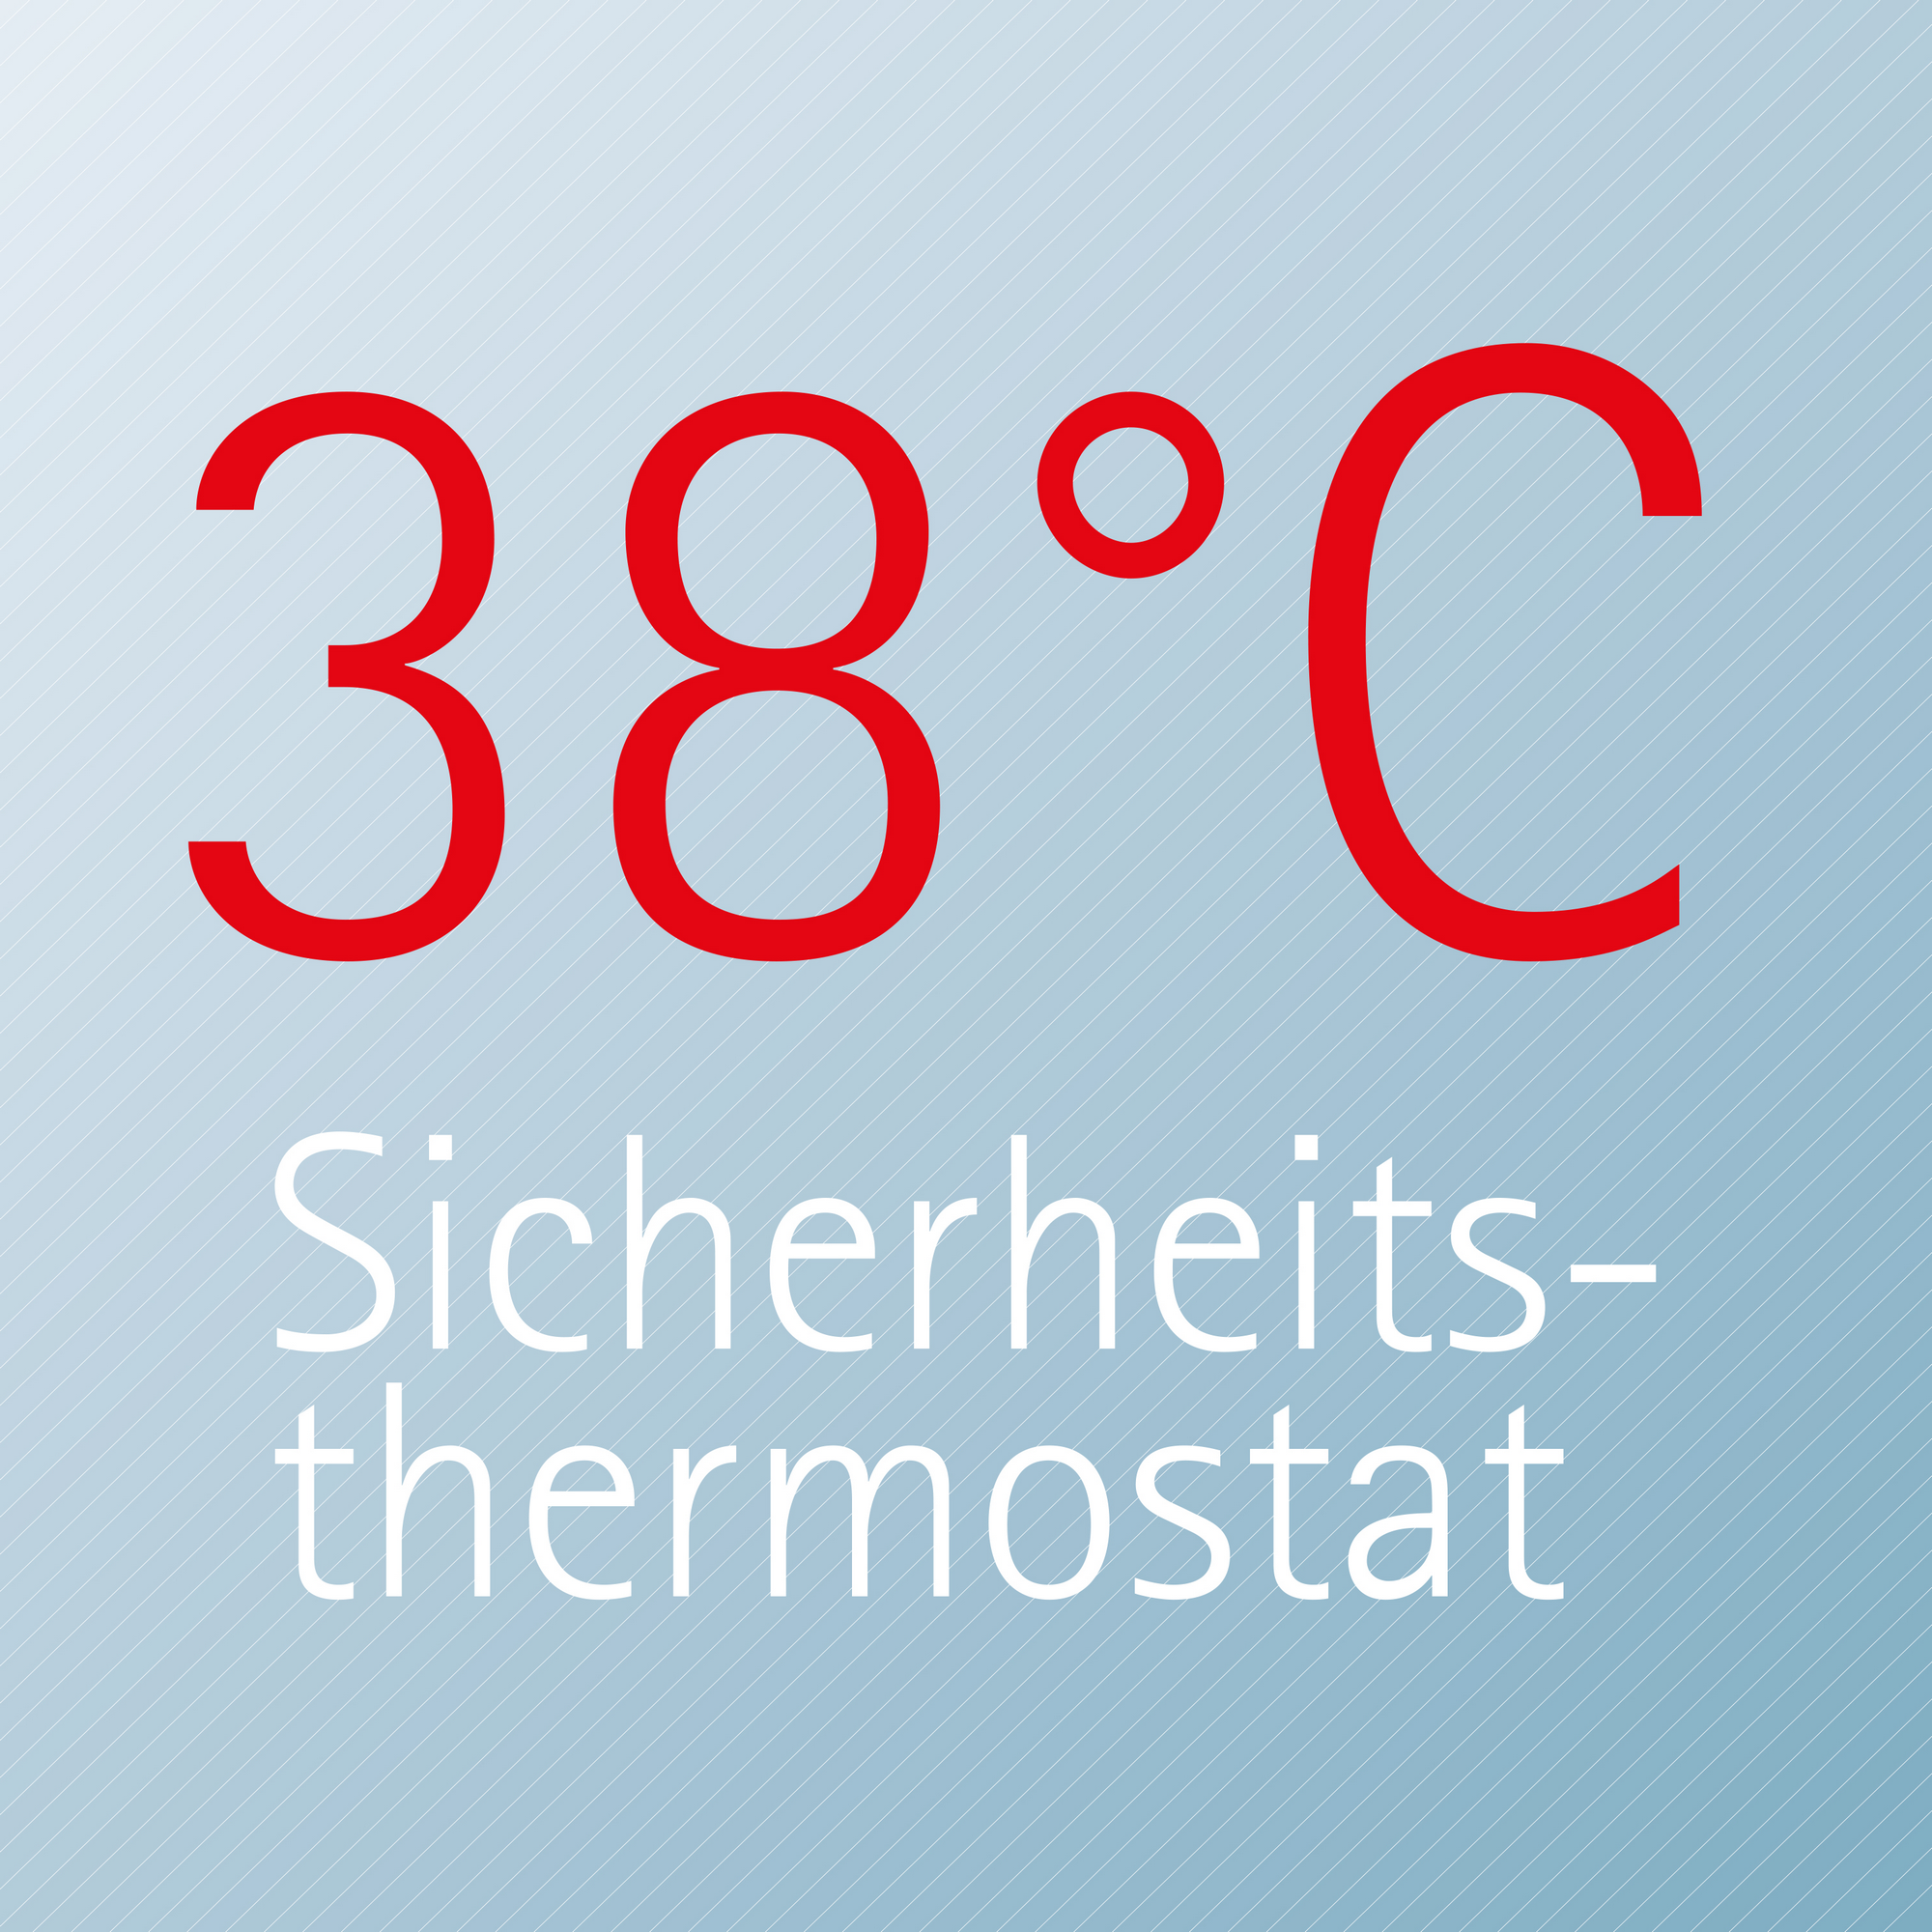 Duschsystem 'Duschmaster Rain III' mit Thermostat und Ablage, rund, 111 cm + product picture